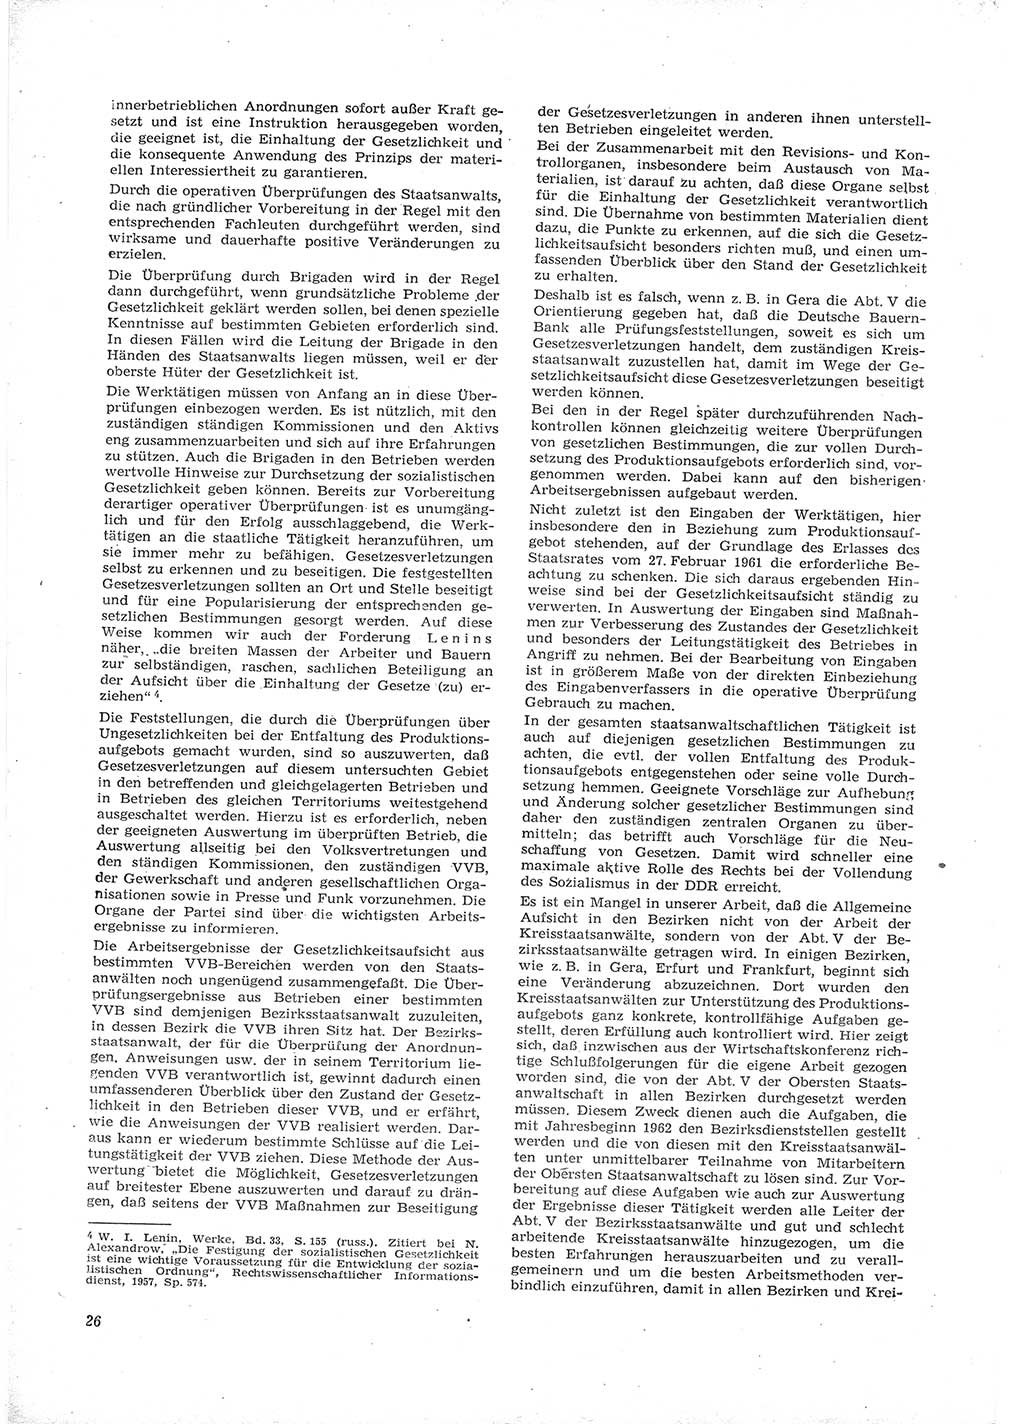 Neue Justiz (NJ), Zeitschrift für Recht und Rechtswissenschaft [Deutsche Demokratische Republik (DDR)], 16. Jahrgang 1962, Seite 26 (NJ DDR 1962, S. 26)